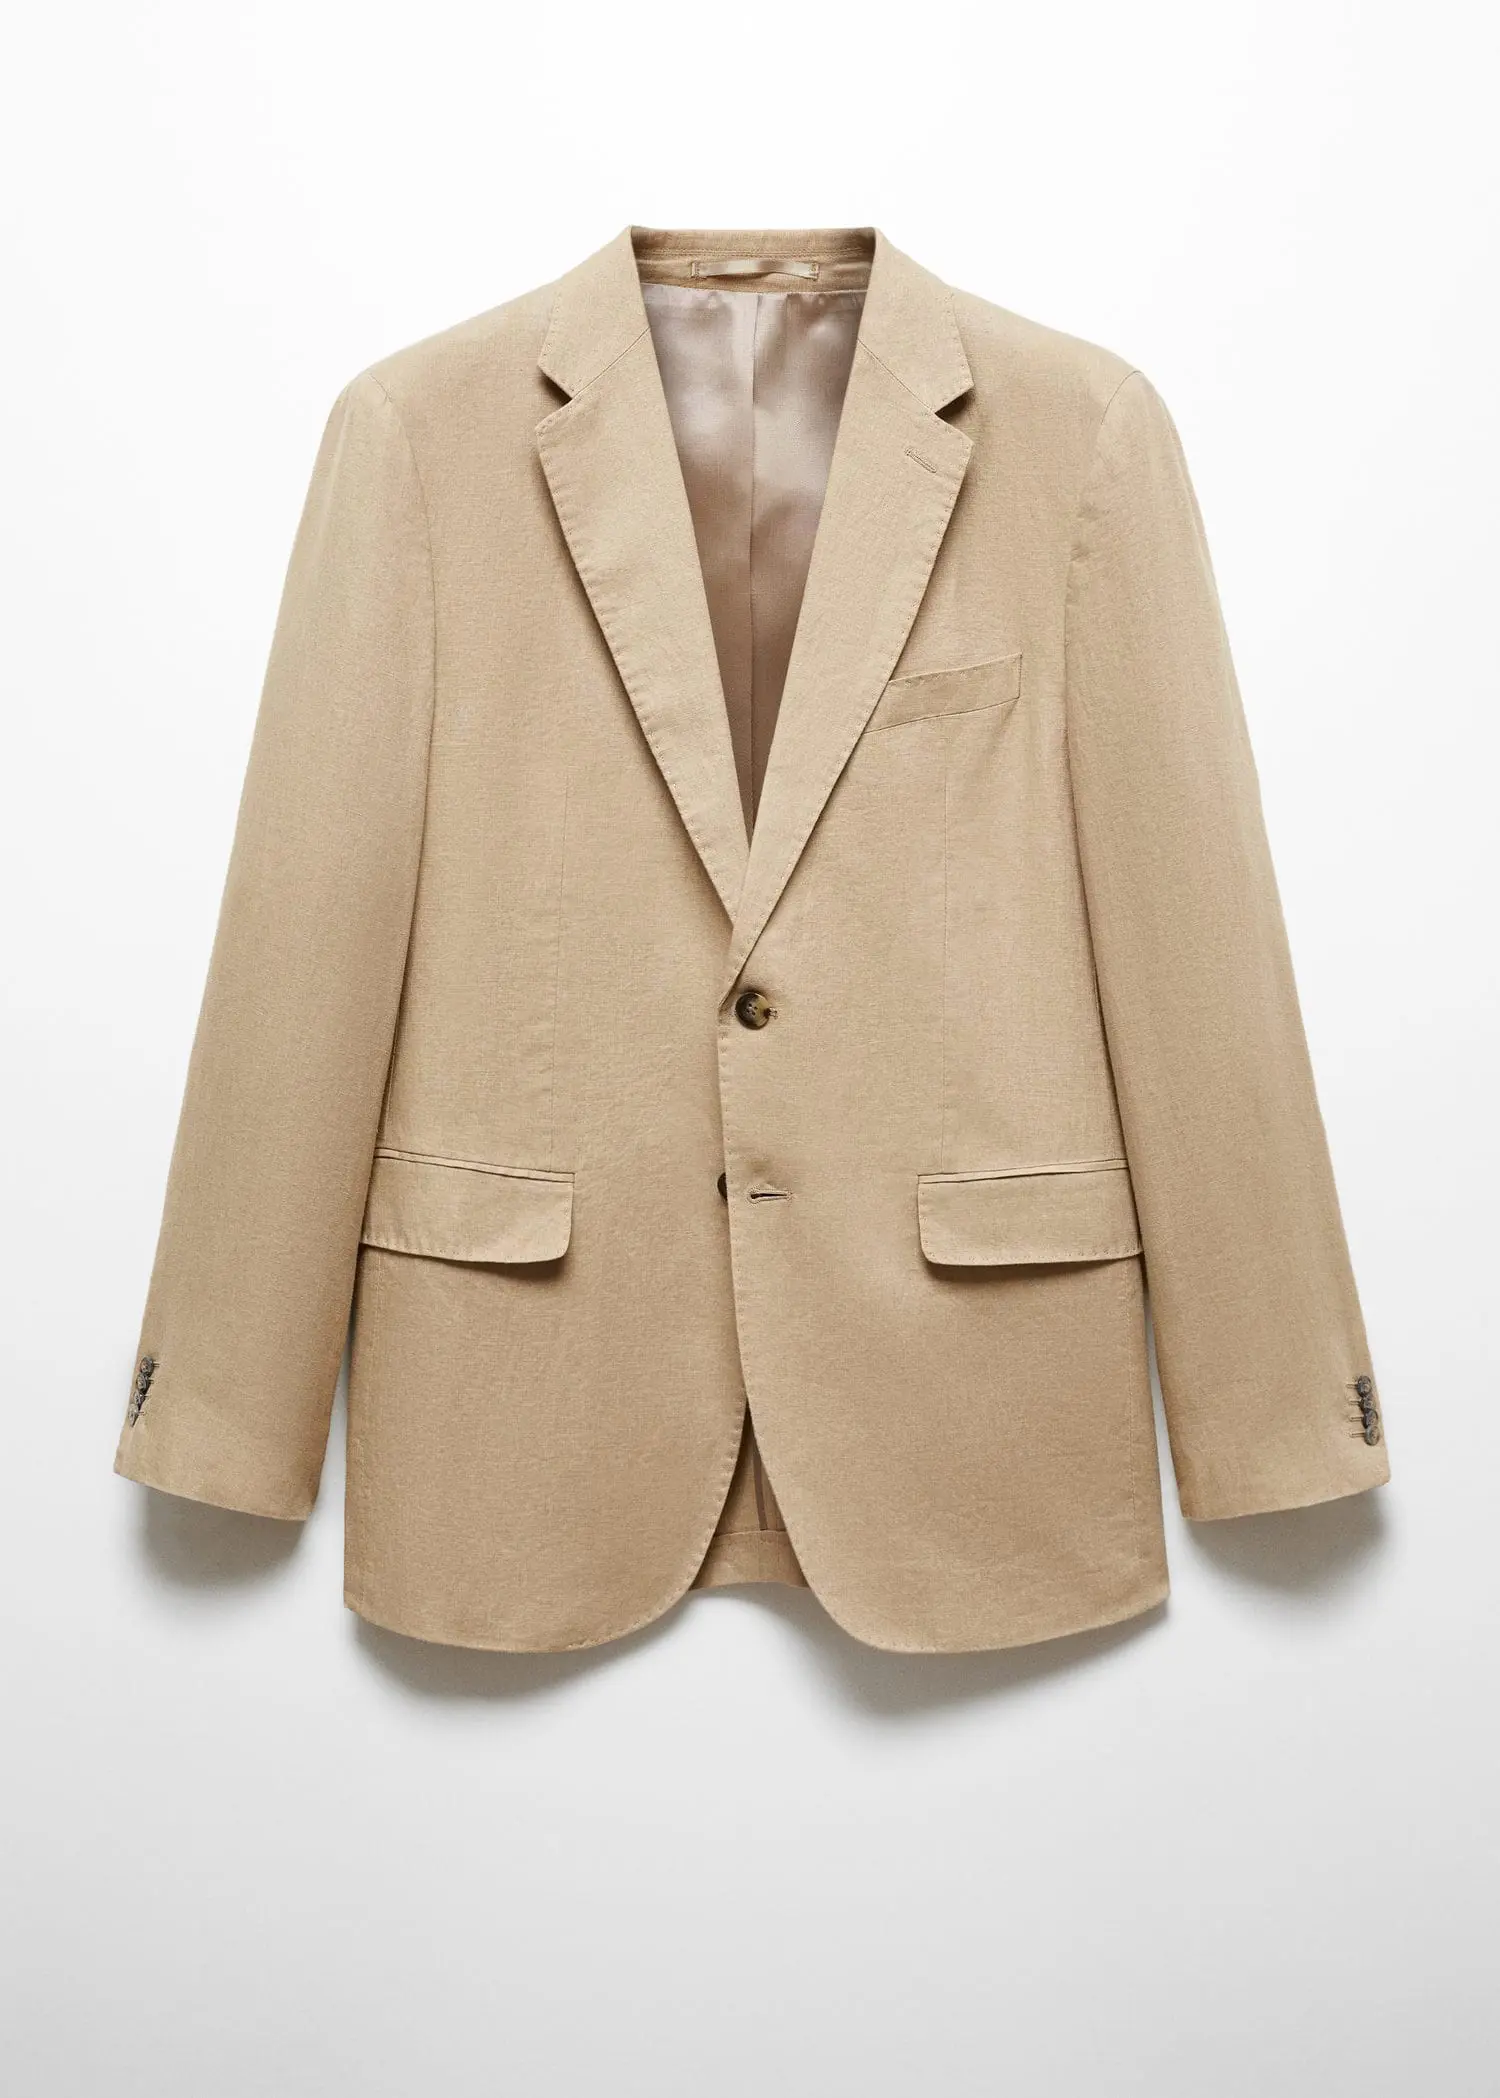 Mango 100% linen slim-fit suit jacket. 1